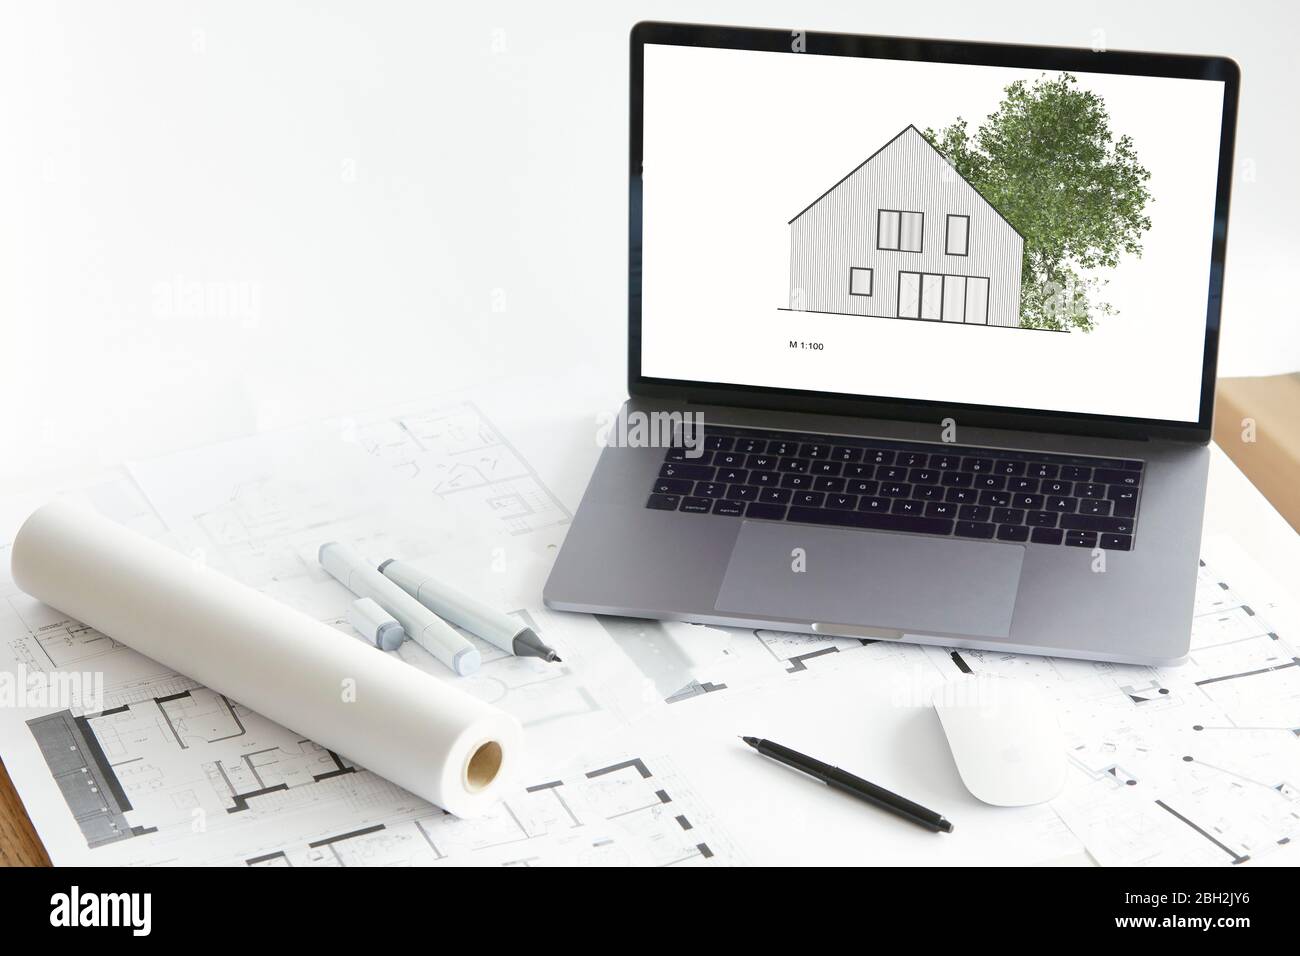 Architektur-Modell des Eigenheims mit Baum auf dem Bildschirm des Laptops, Bauplan Stockfoto